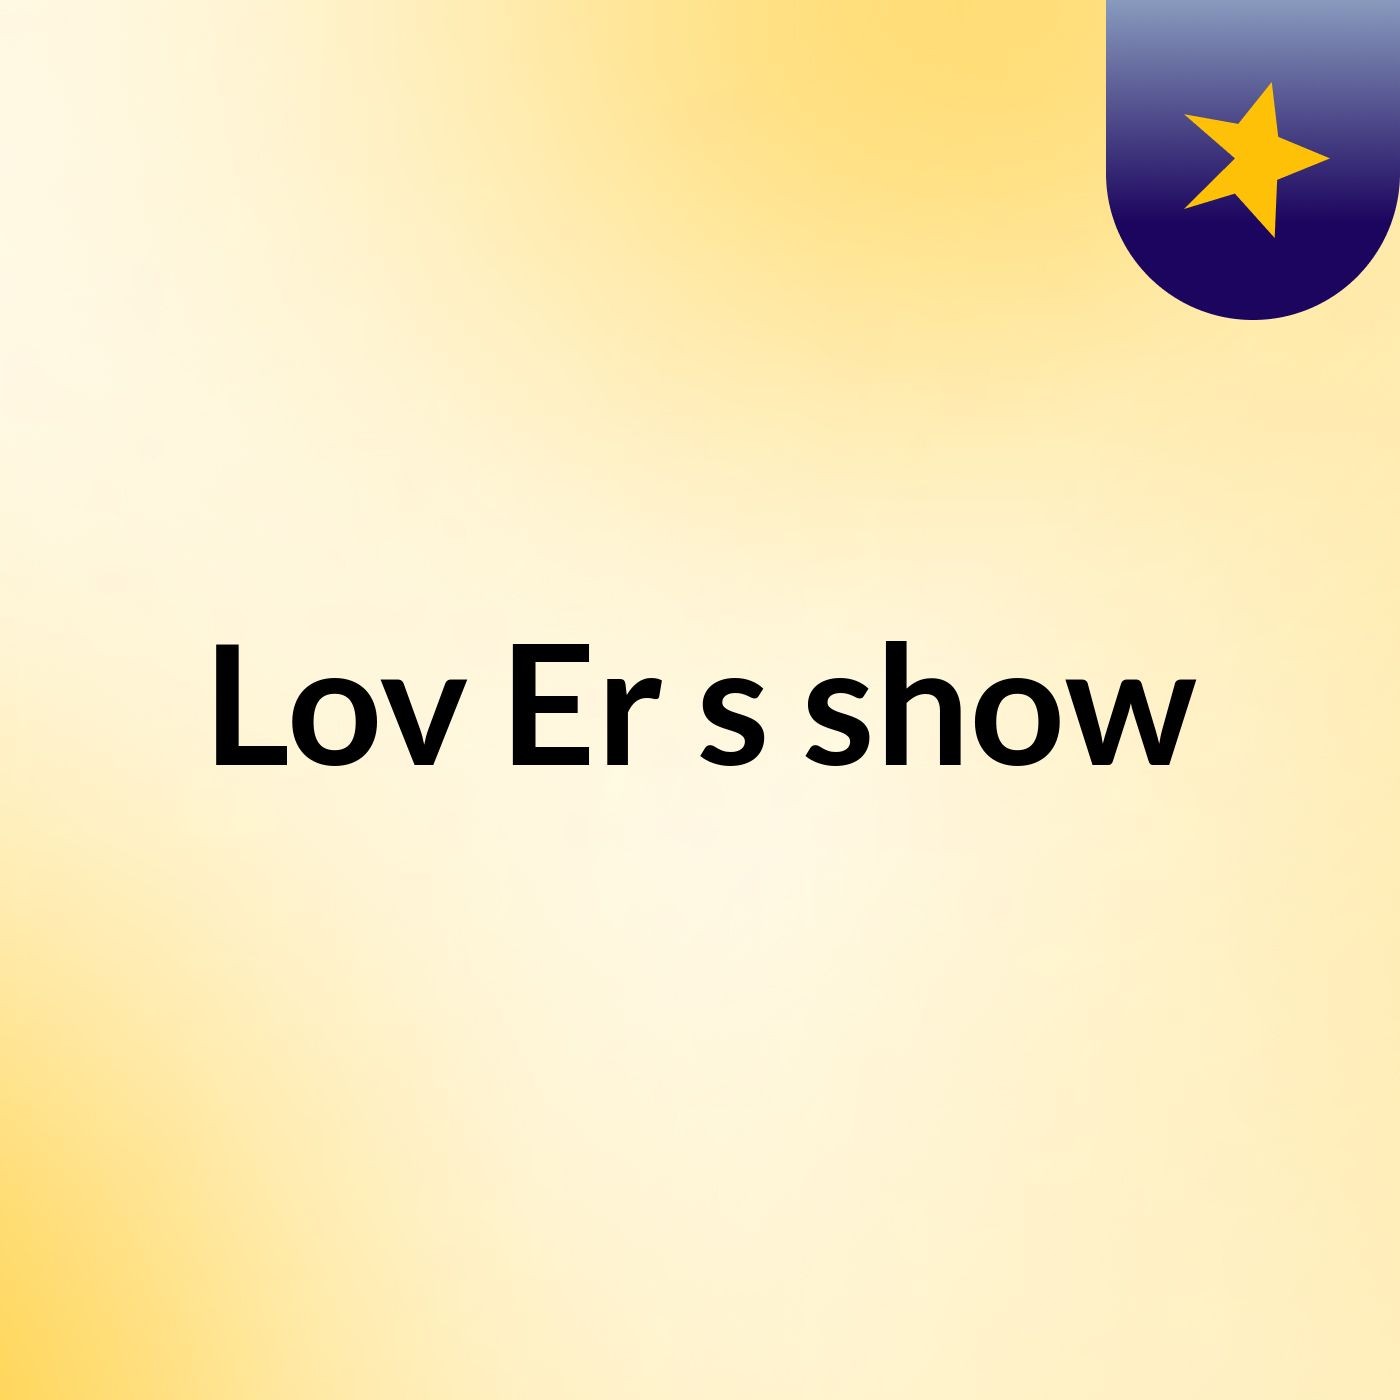 Lov Er's show